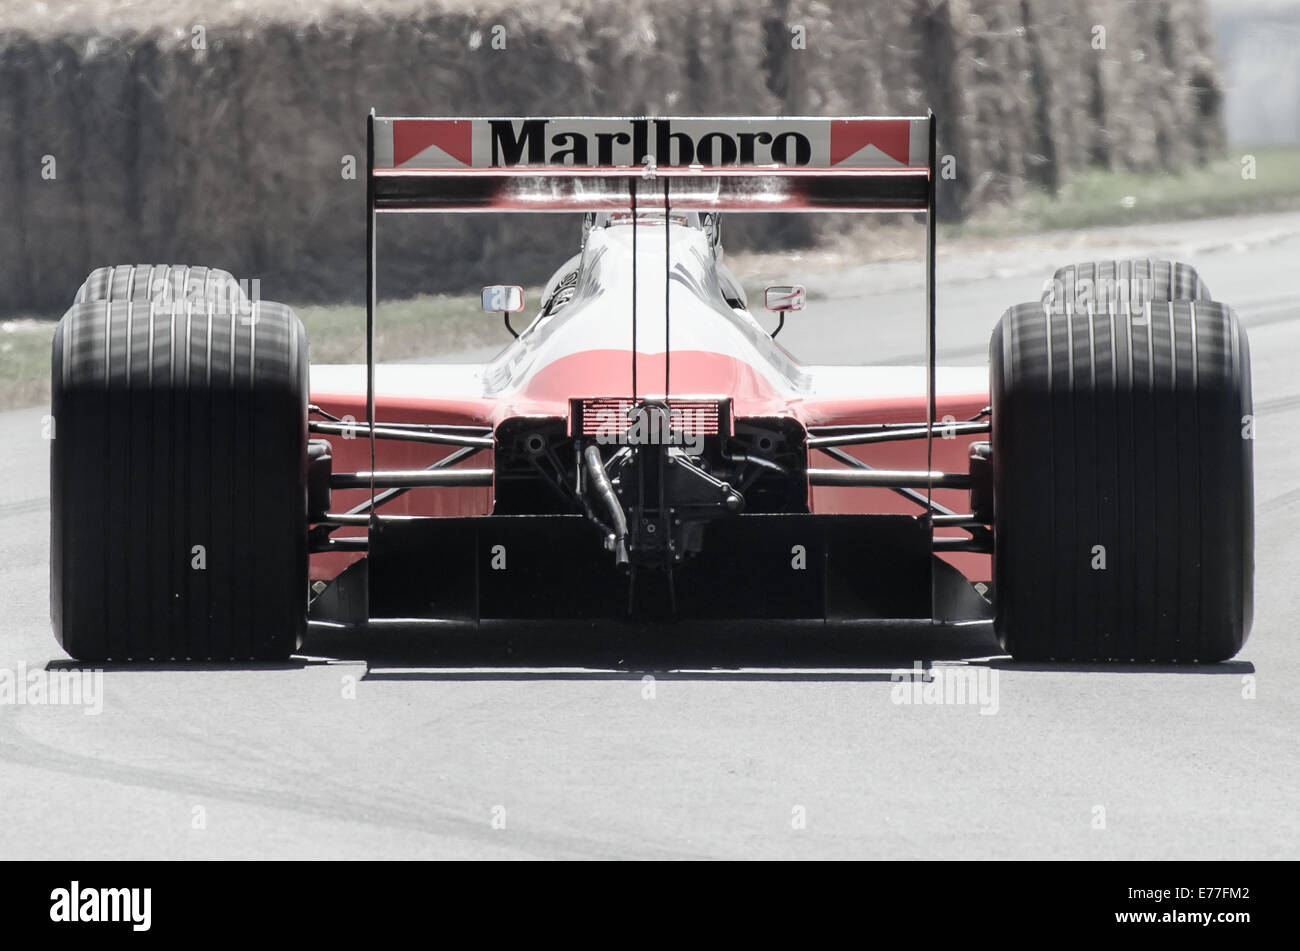 Der McLaren MP 4/4 war ein erfolgreicher F1-Wagen, die in der Saison '88 angetrieben von Ayrton Senna und Alain Prost konkurrierten. Entsättigung Bild. Ansicht von hinten Stockfoto